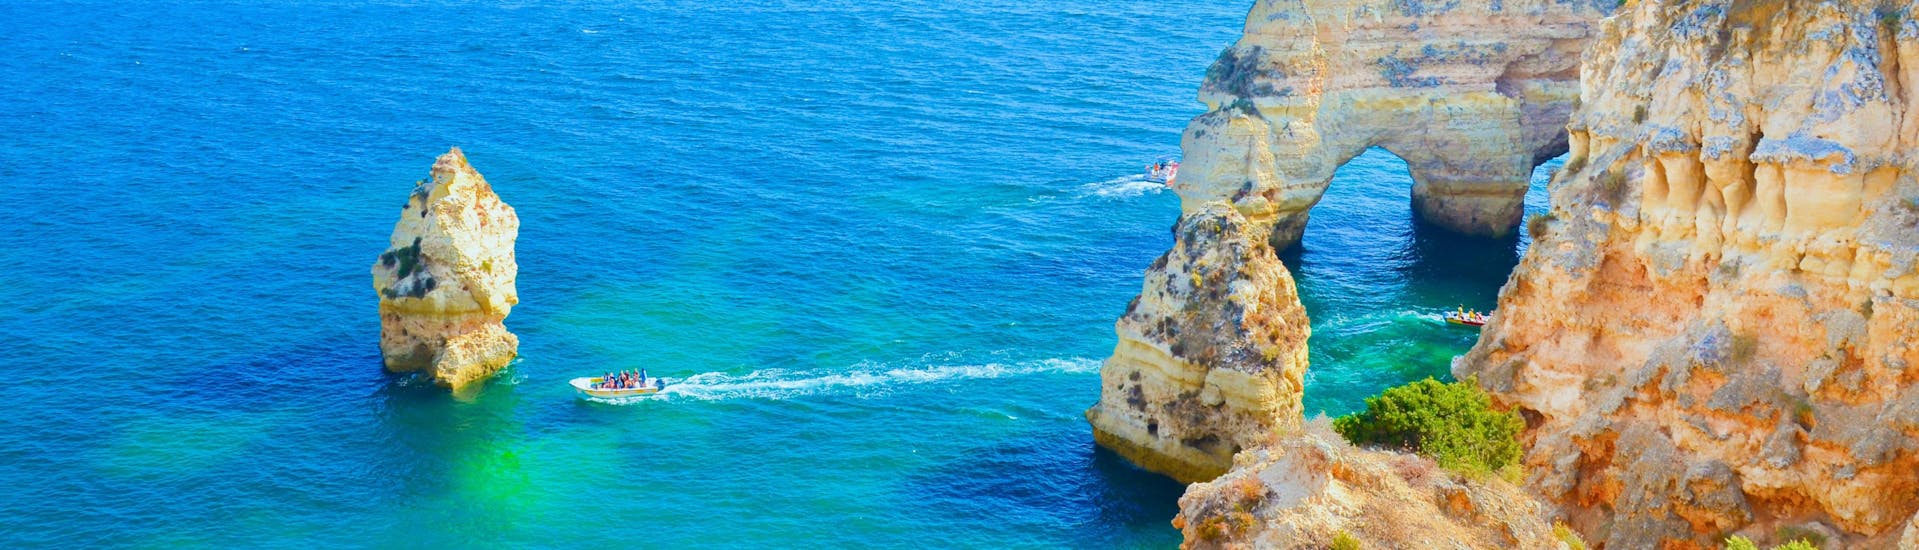 Una foto de las aguas cristalinas y las impresionantes formaciones rocosas de la costa del Algarve que los visitantes podrán disfrutar en el viaje en barco desde Lagos.